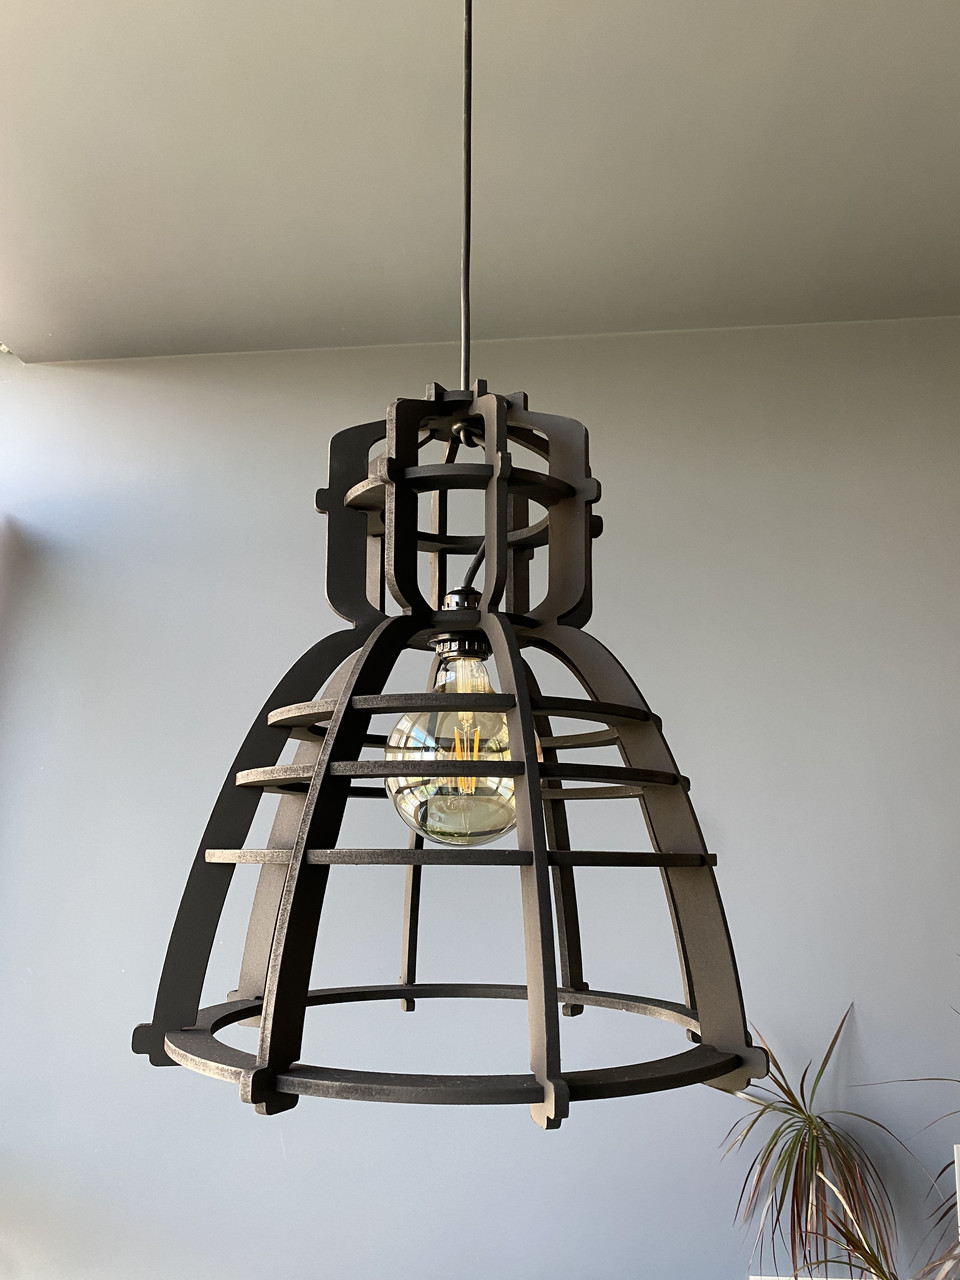 Світильник Лофт (люстра Loft) голландський дизайн, чорна